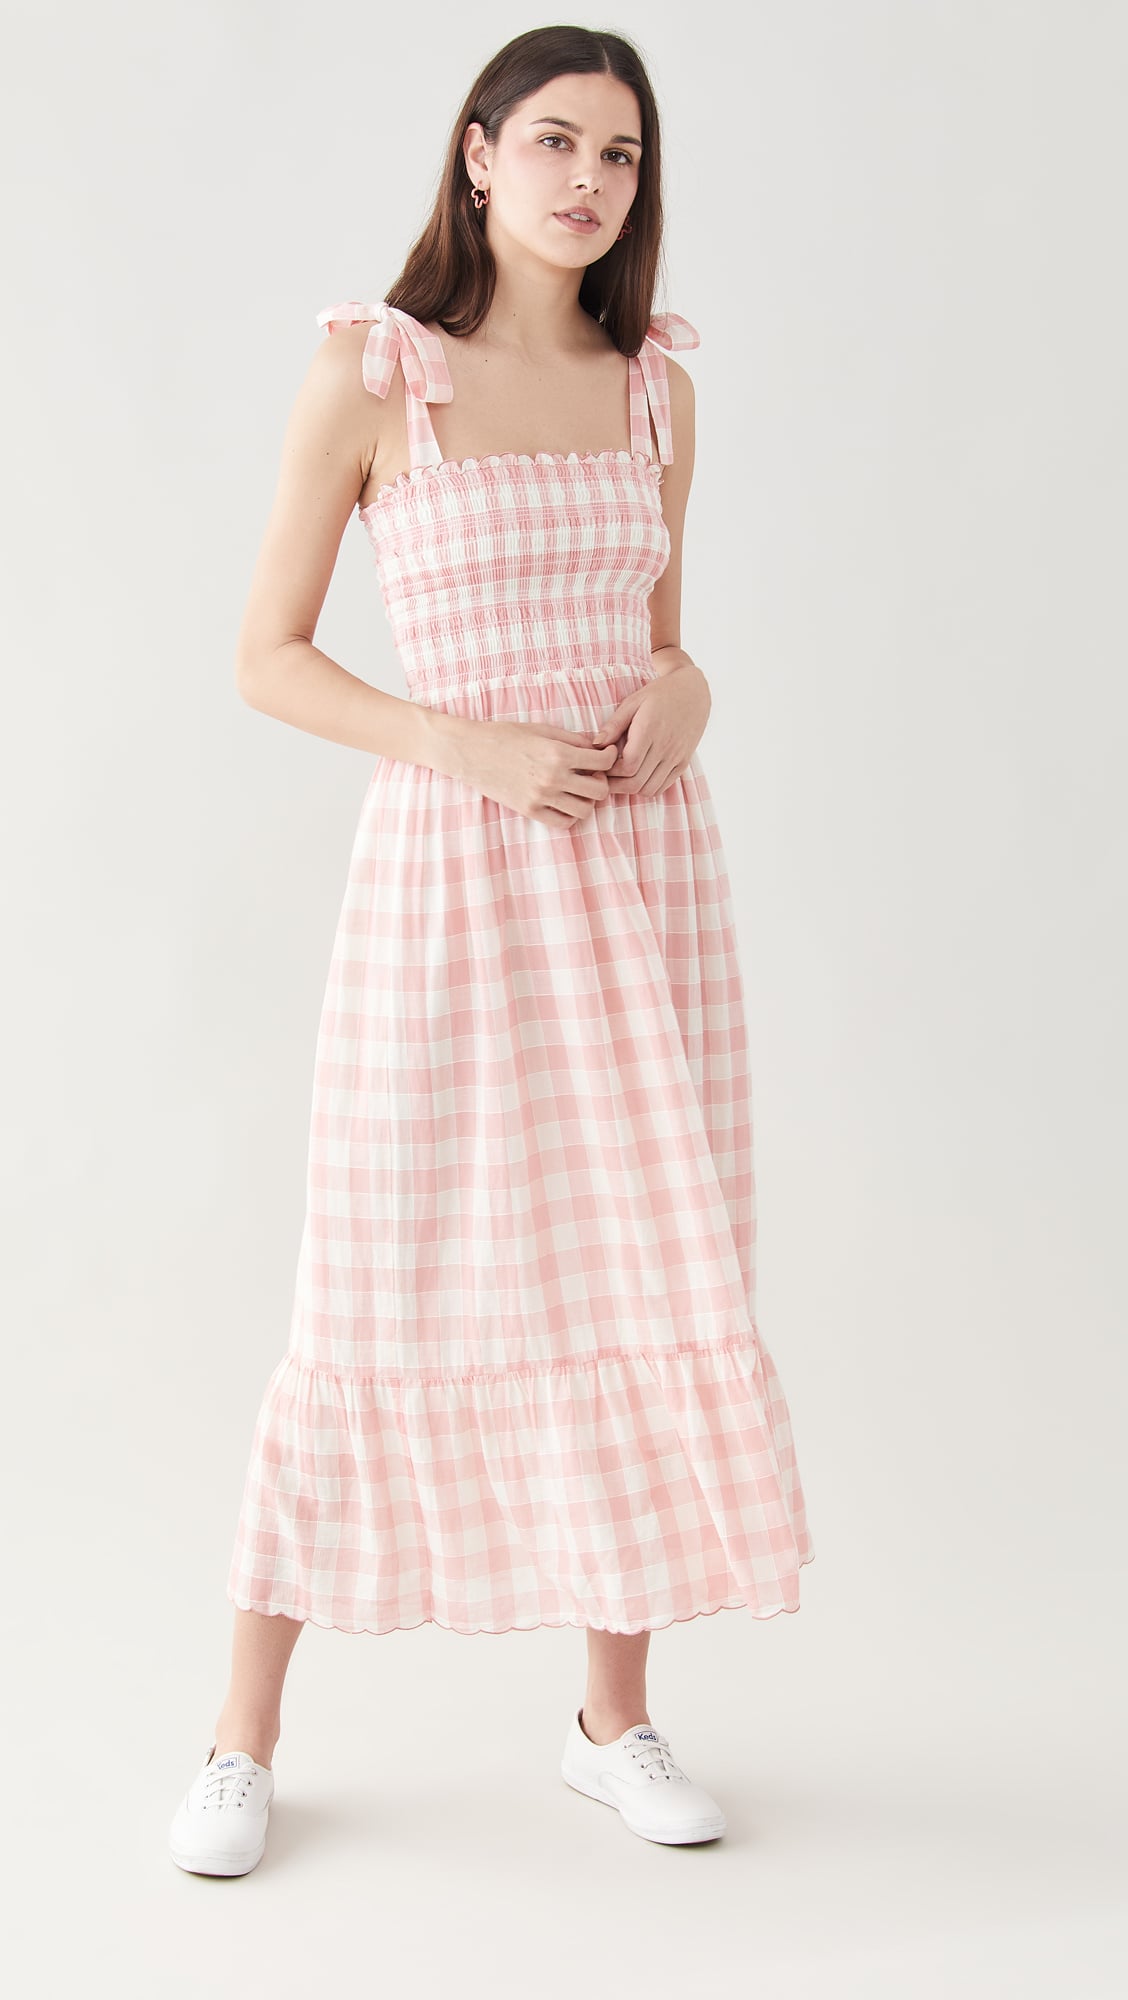 Lagoon Solid Rib Knit Midi Dress - Pink